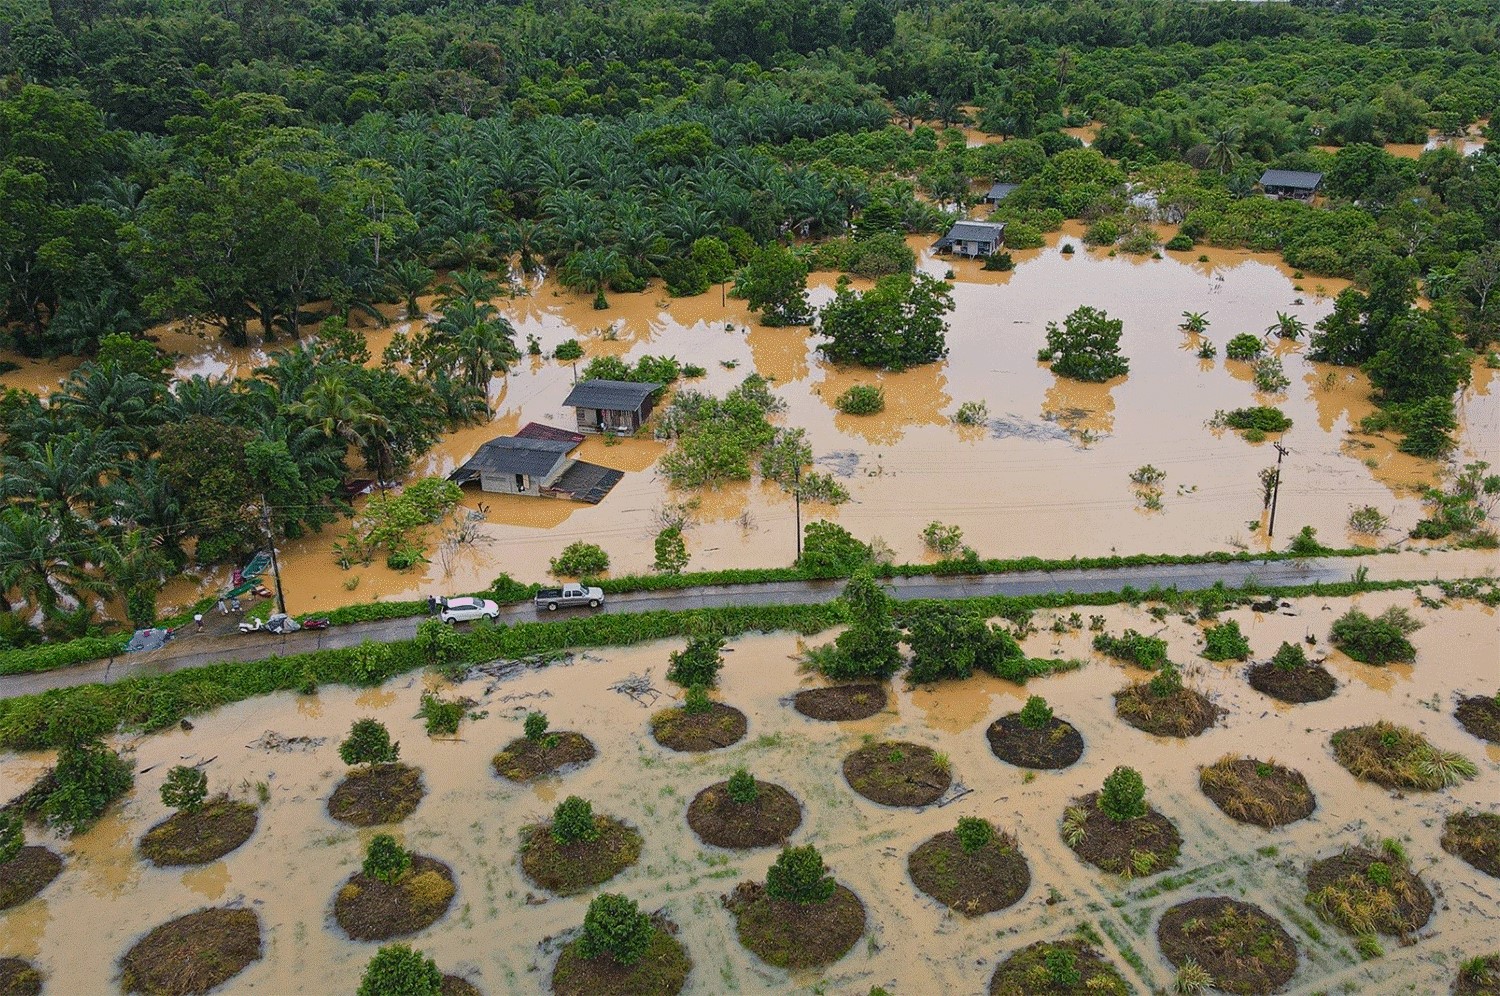 Nhiều khu vực ở Thái Lan phải sơ tán dân khẩn cấp do mưa lũ